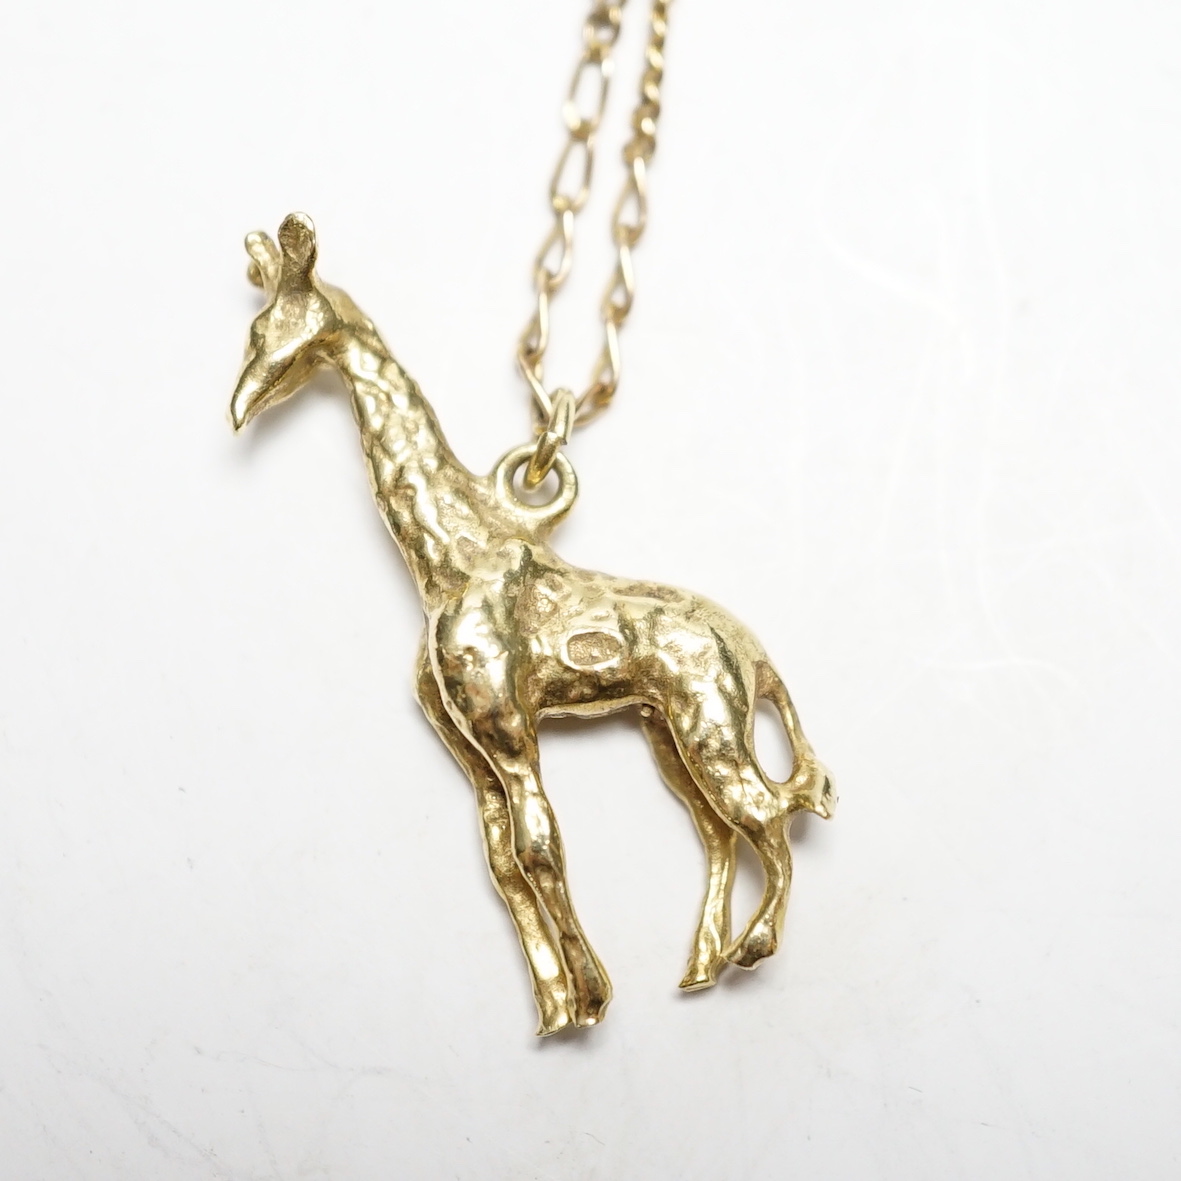 A South African yellow metal giraffe pendant, 30mm, on a 9k chain, gross weight 7.4 grams.